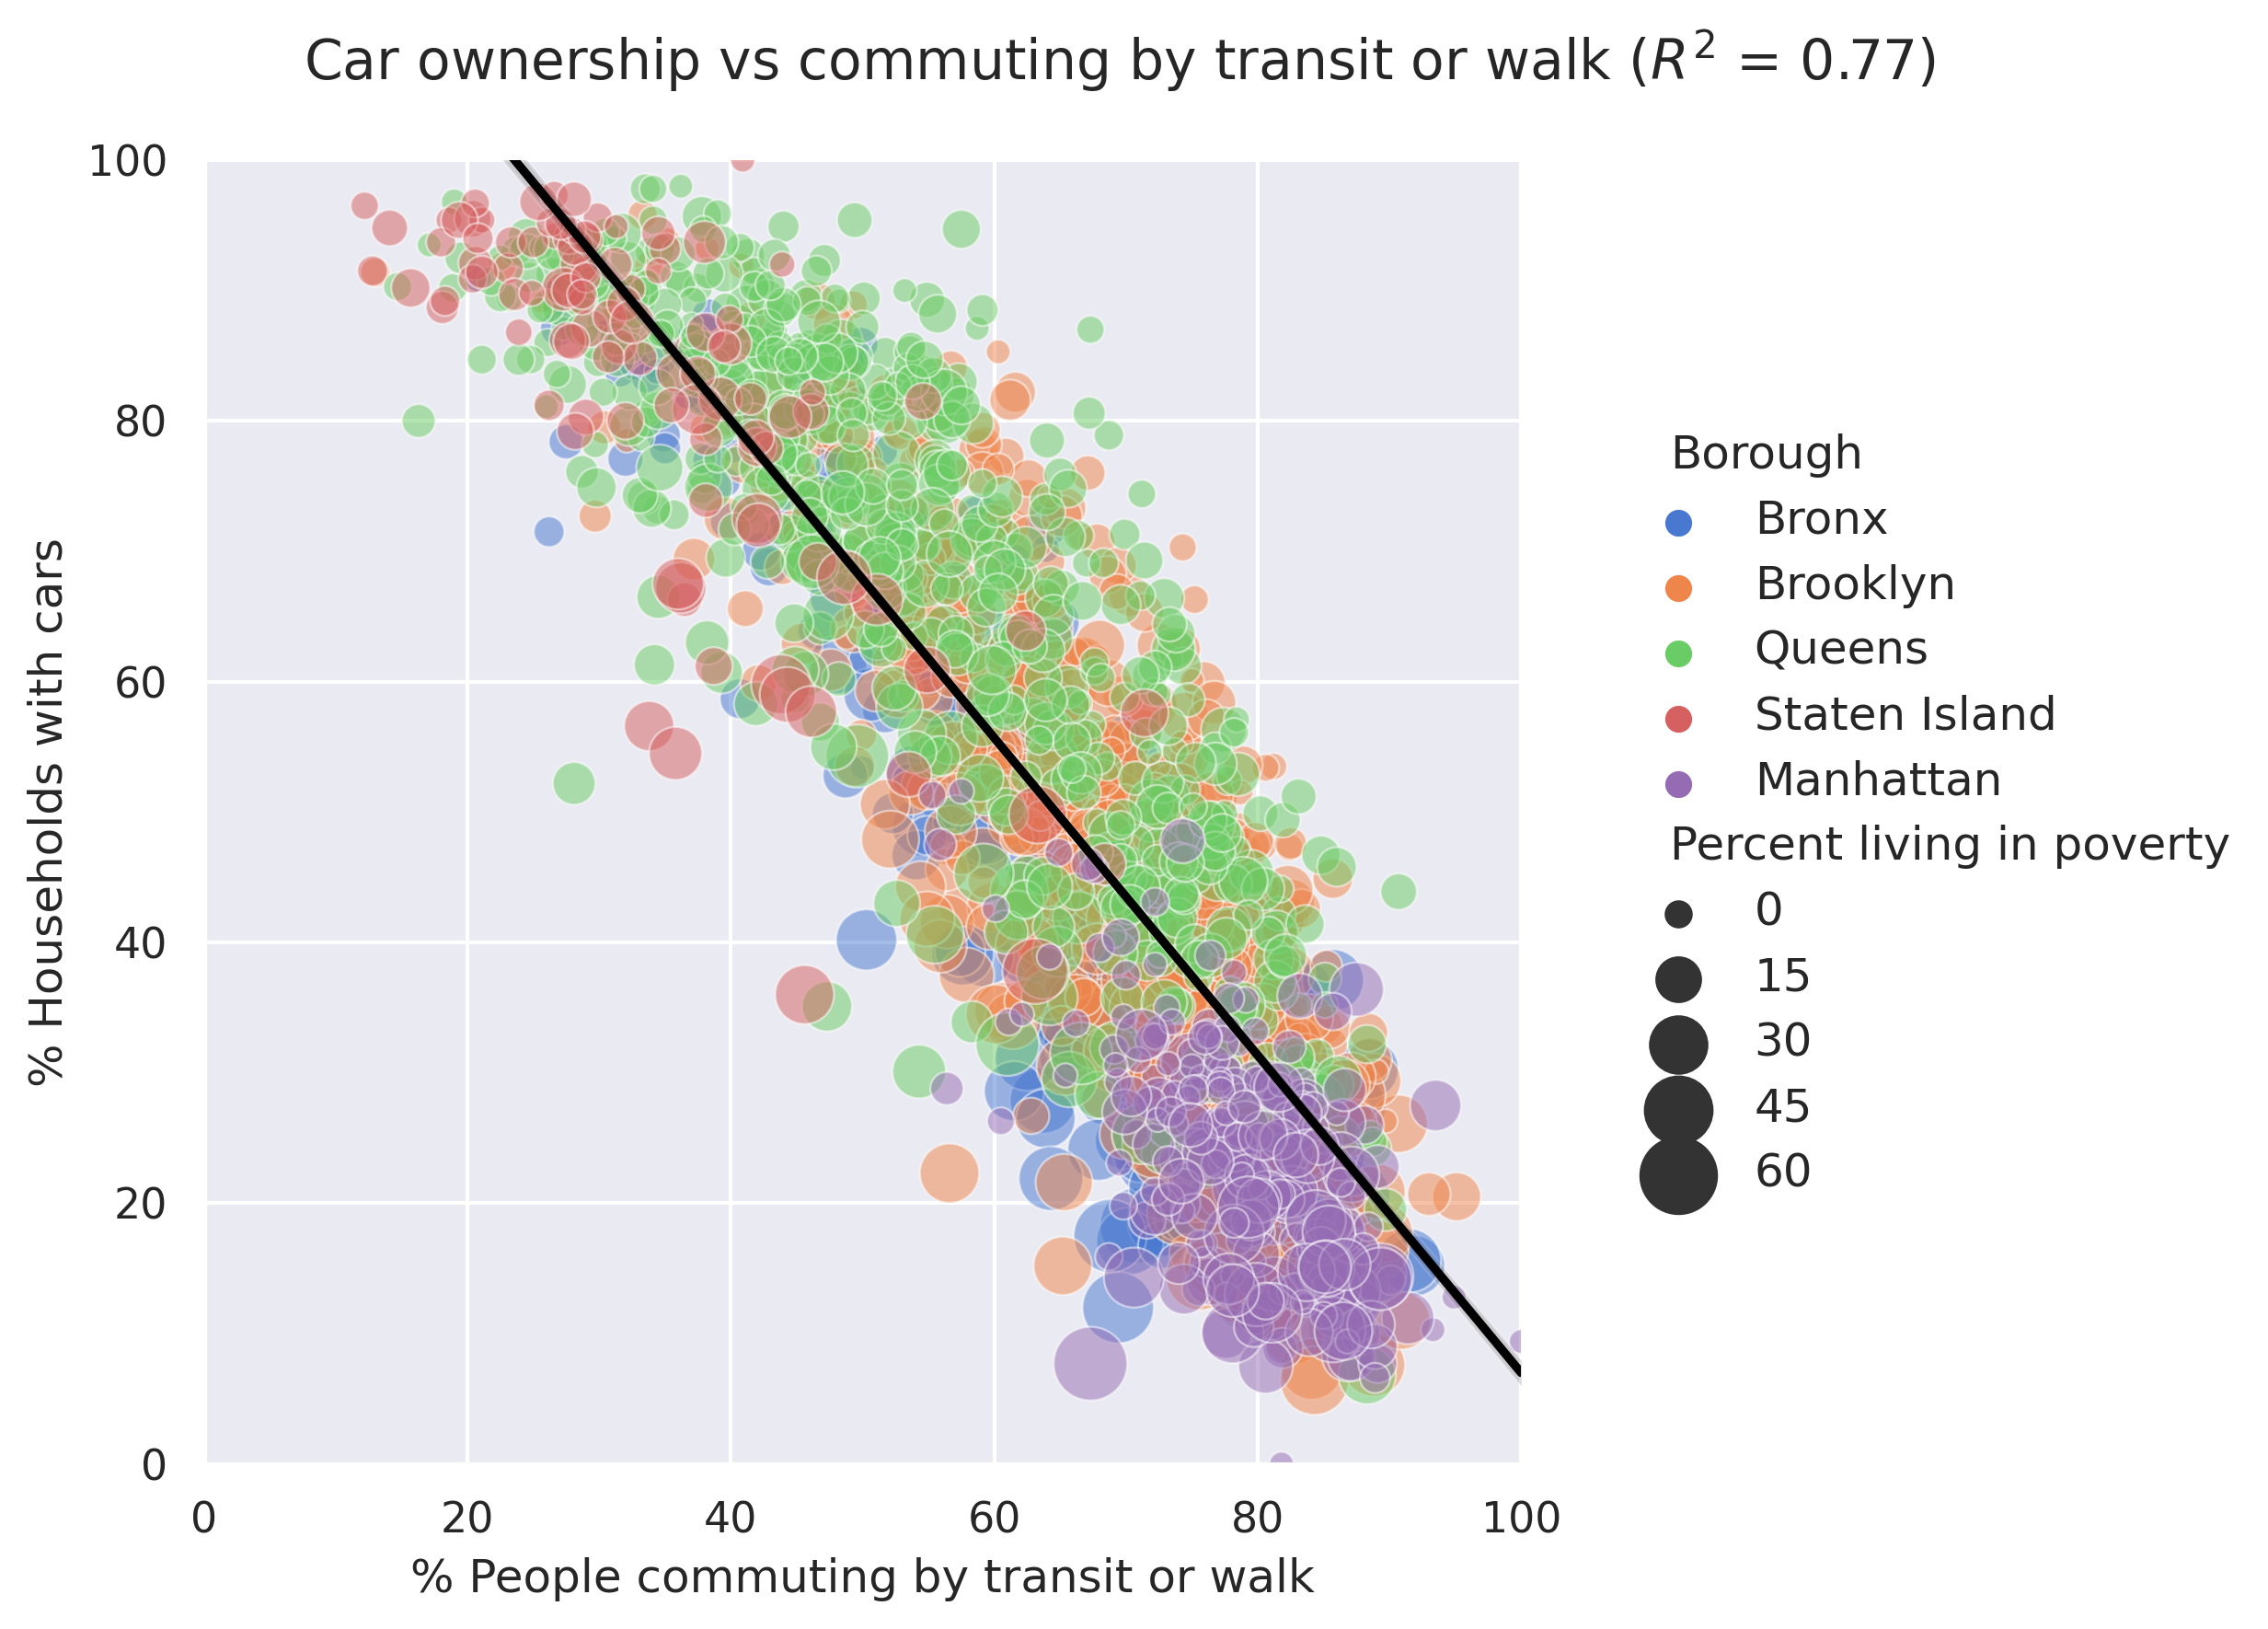 Car ownership vs transit commute